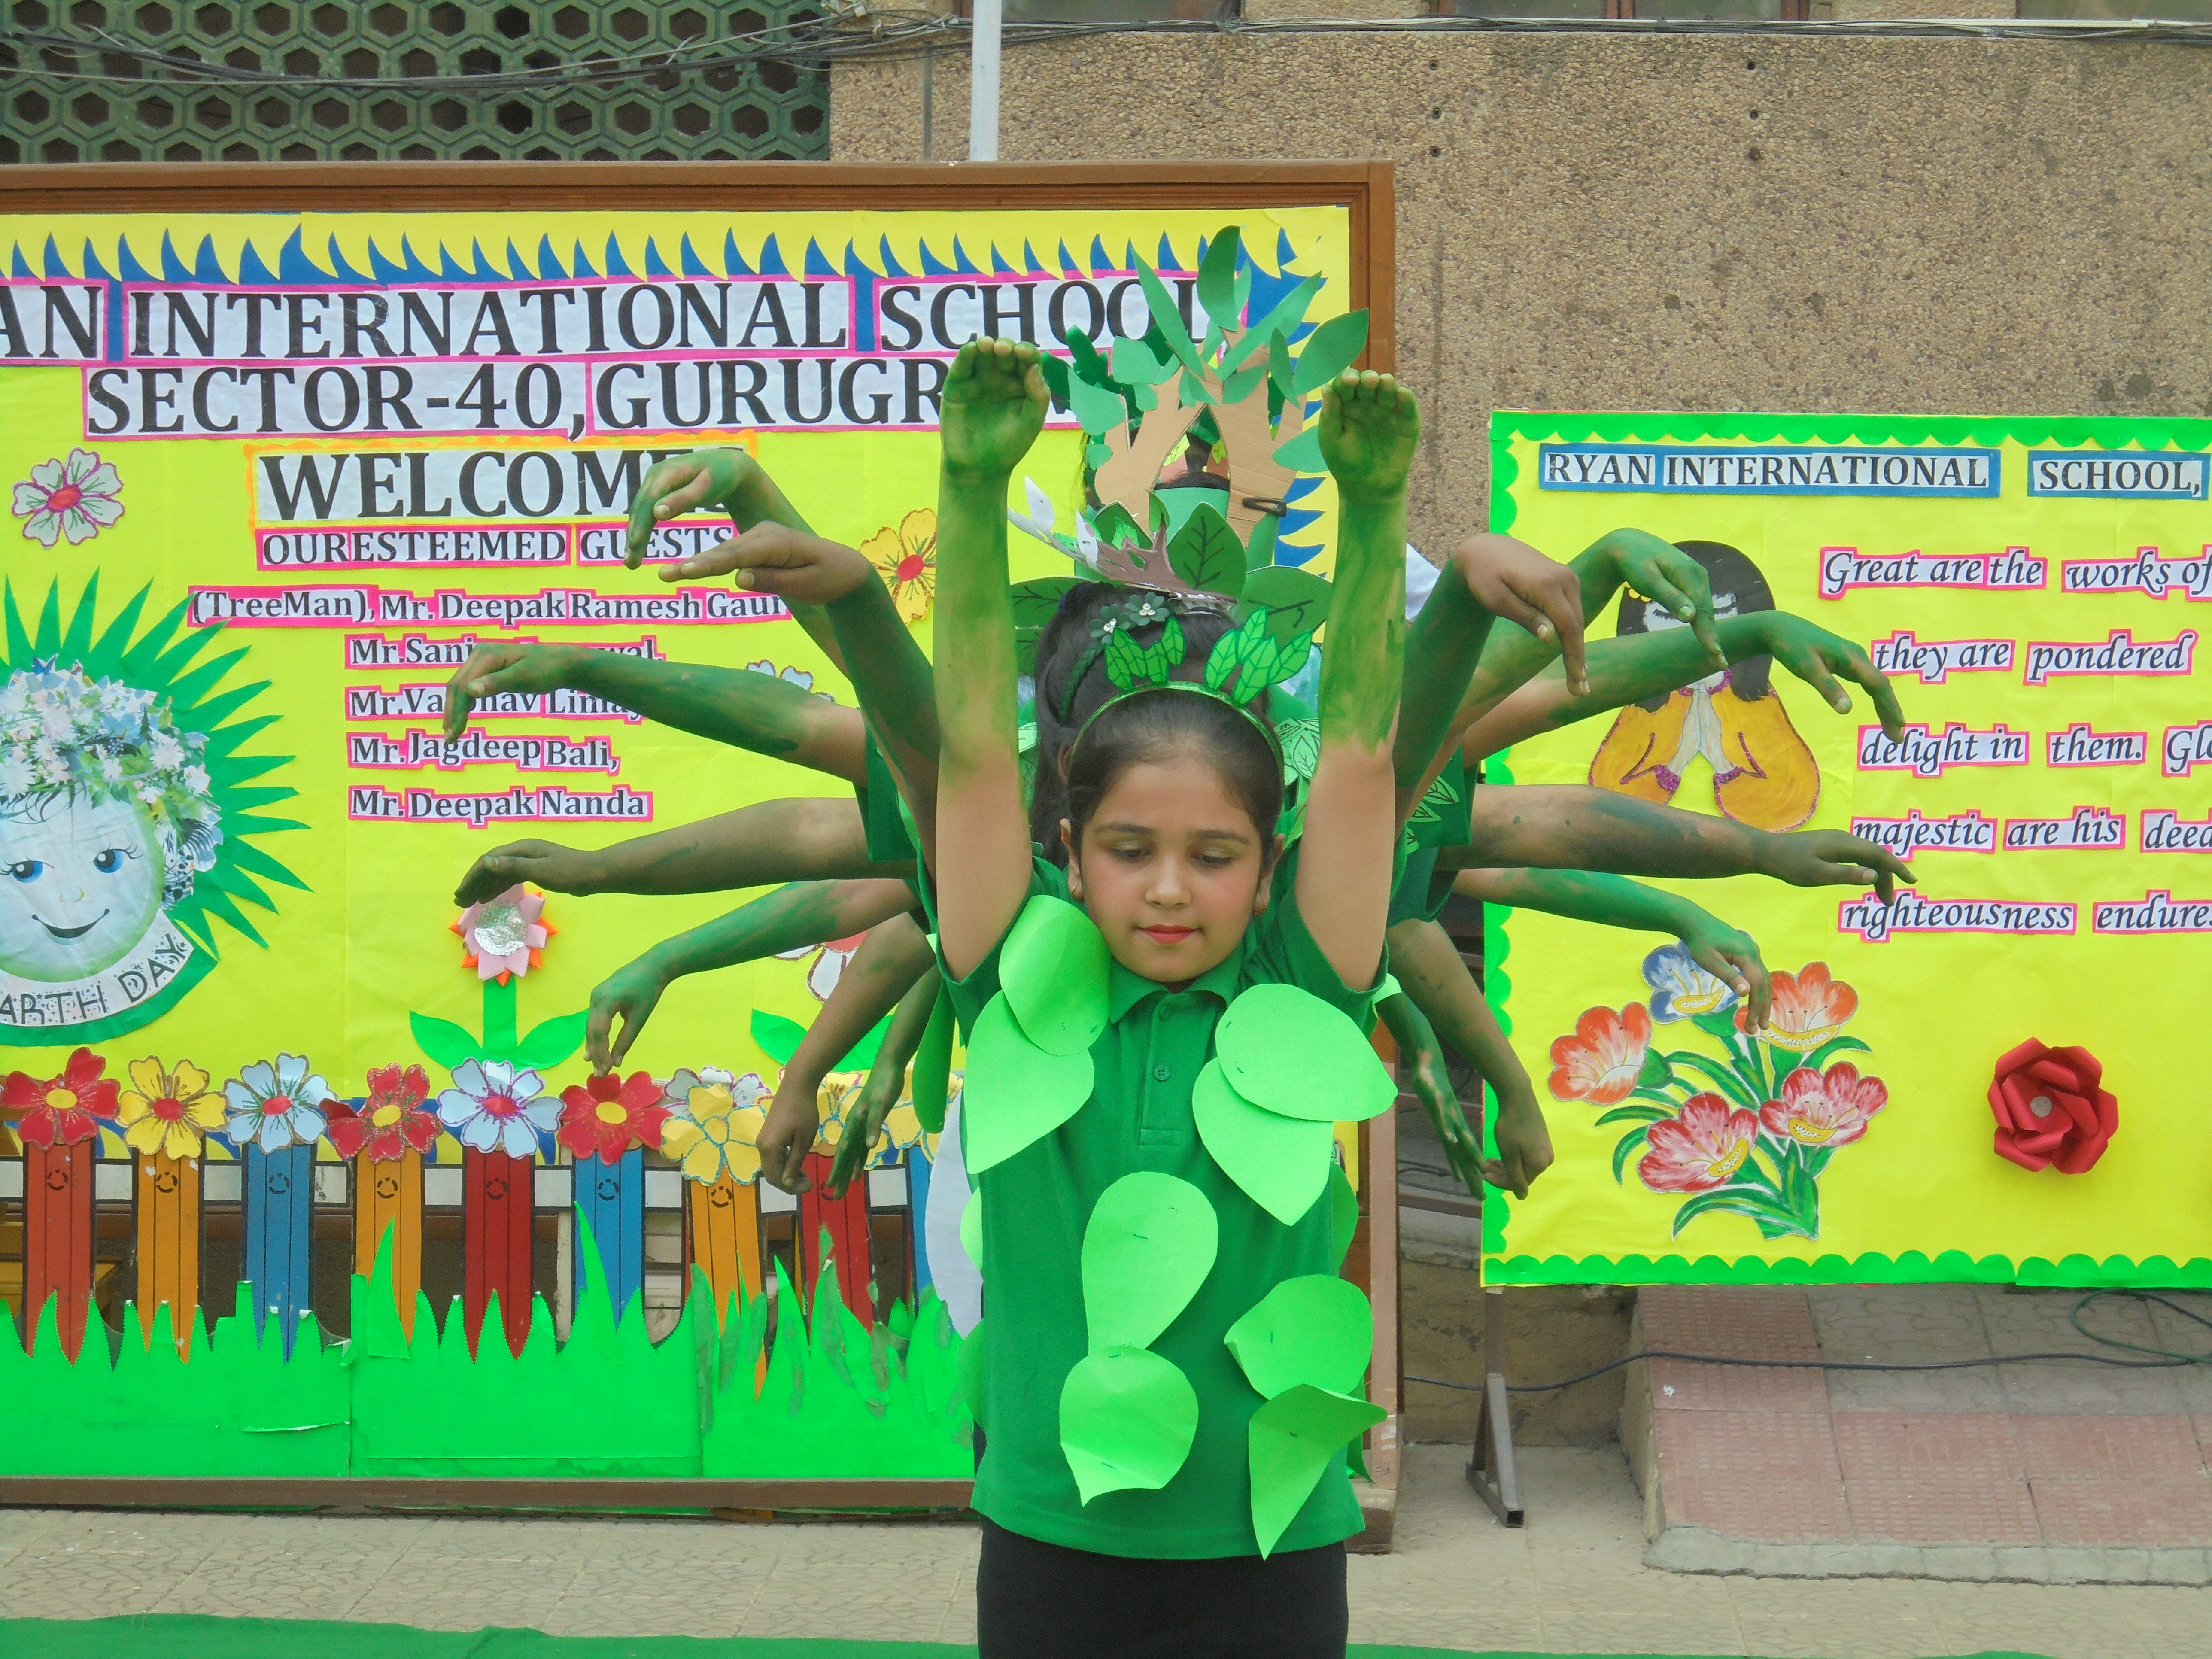 Earth Day - Ryan International School, Sec 40, Gurgaon